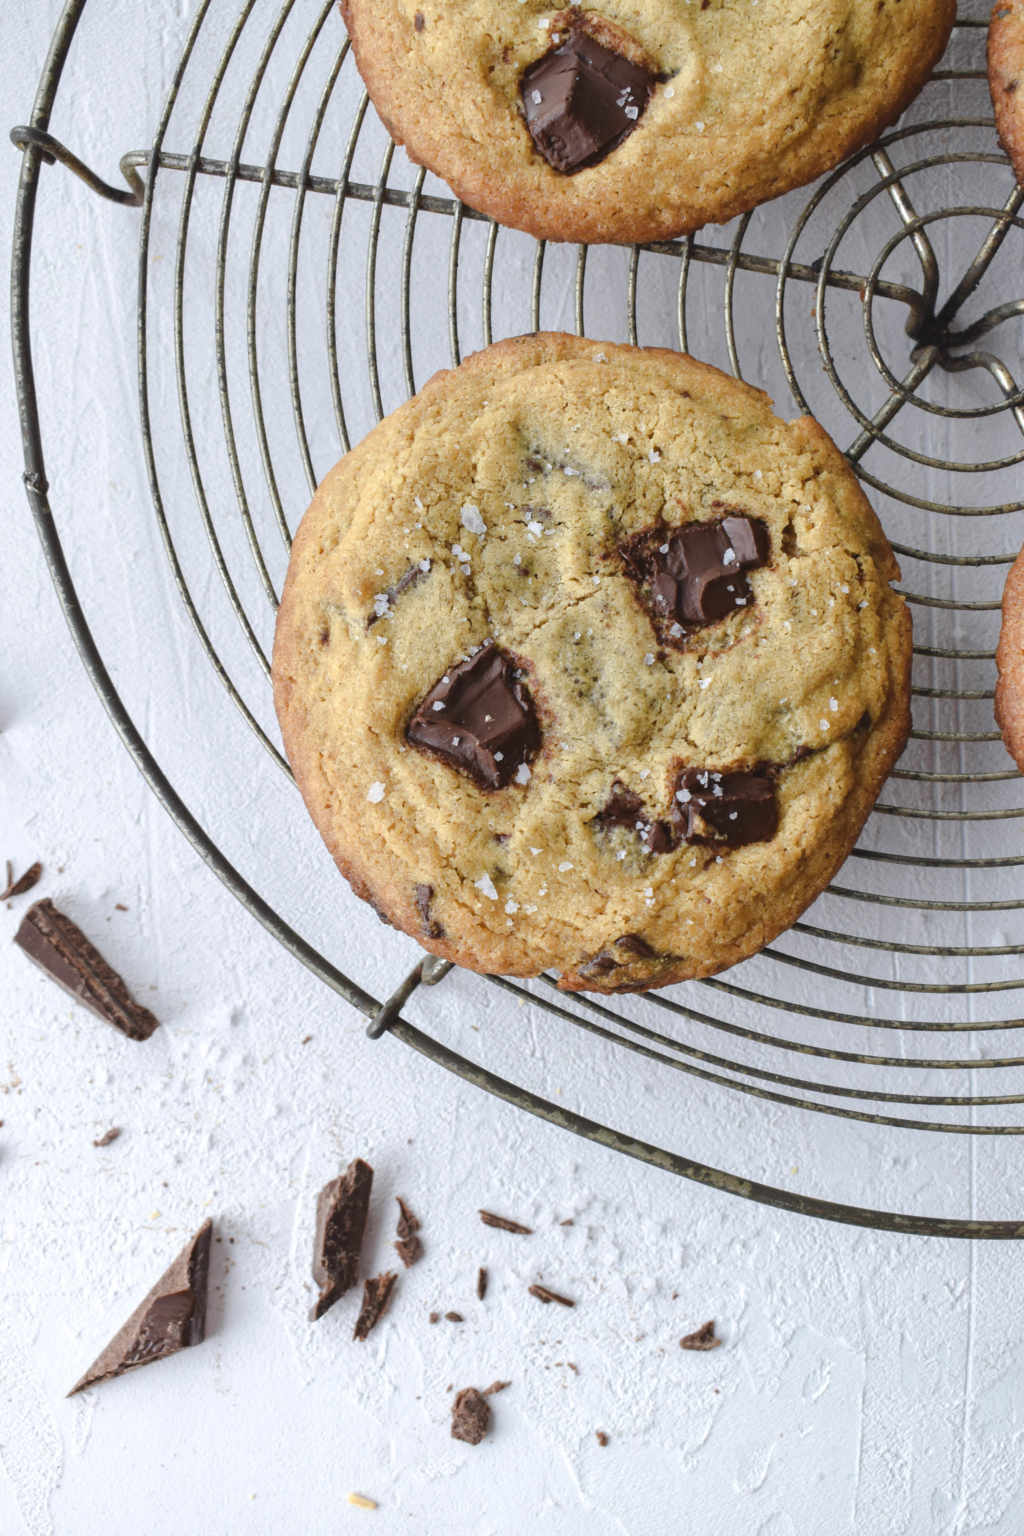 Rezept für weiche Chocolate Chip Cookies mit dunkler Schokolade. Ganz einfach und schnell gemacht. Bestes Rezept für amerikanische Cookies. #cookies #subway #kekse #schokolade